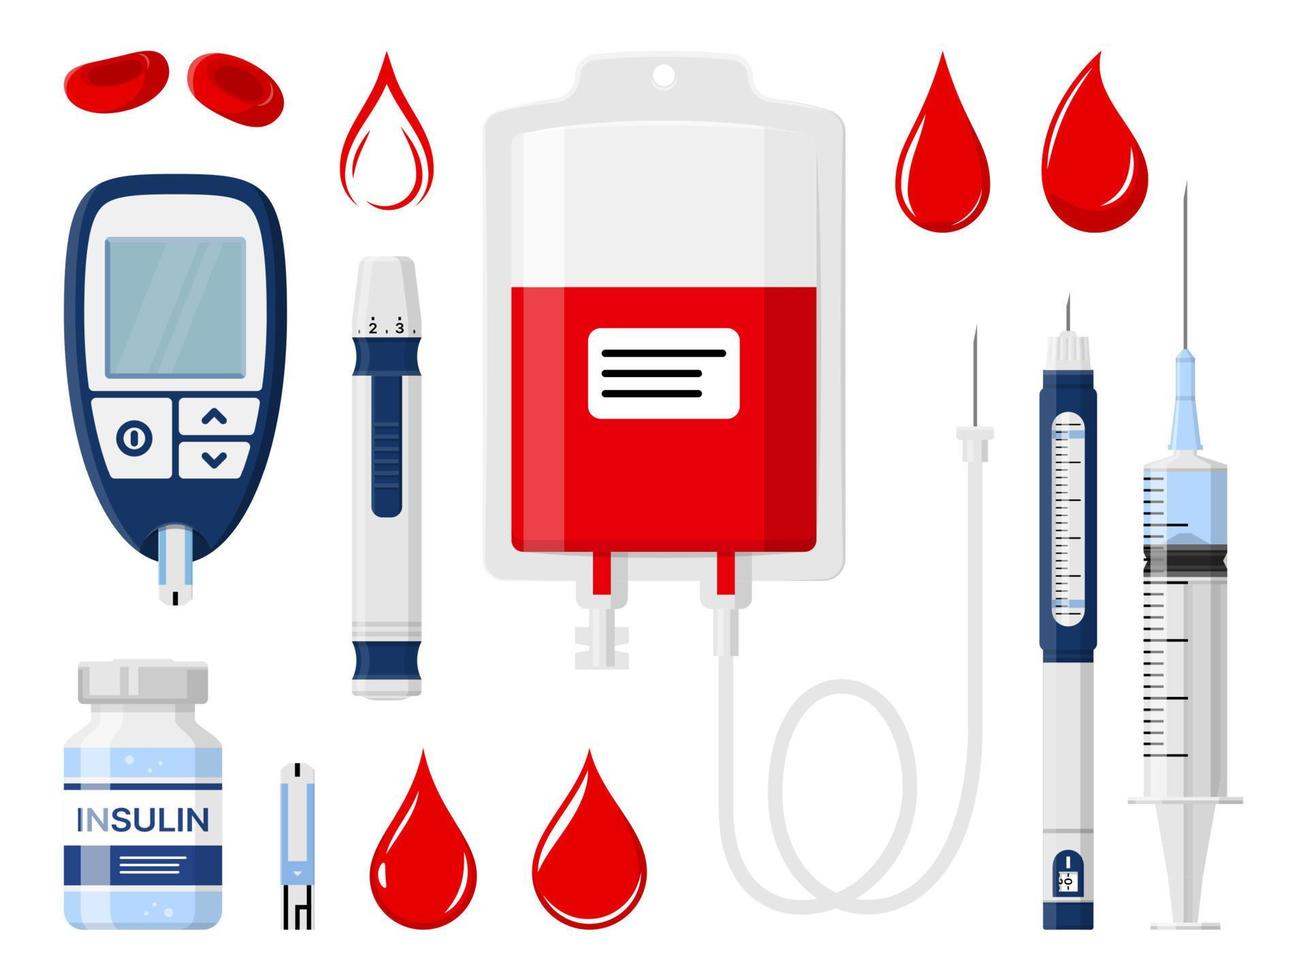 suikerziekte, bloed bijdrage en insuline injectie vector